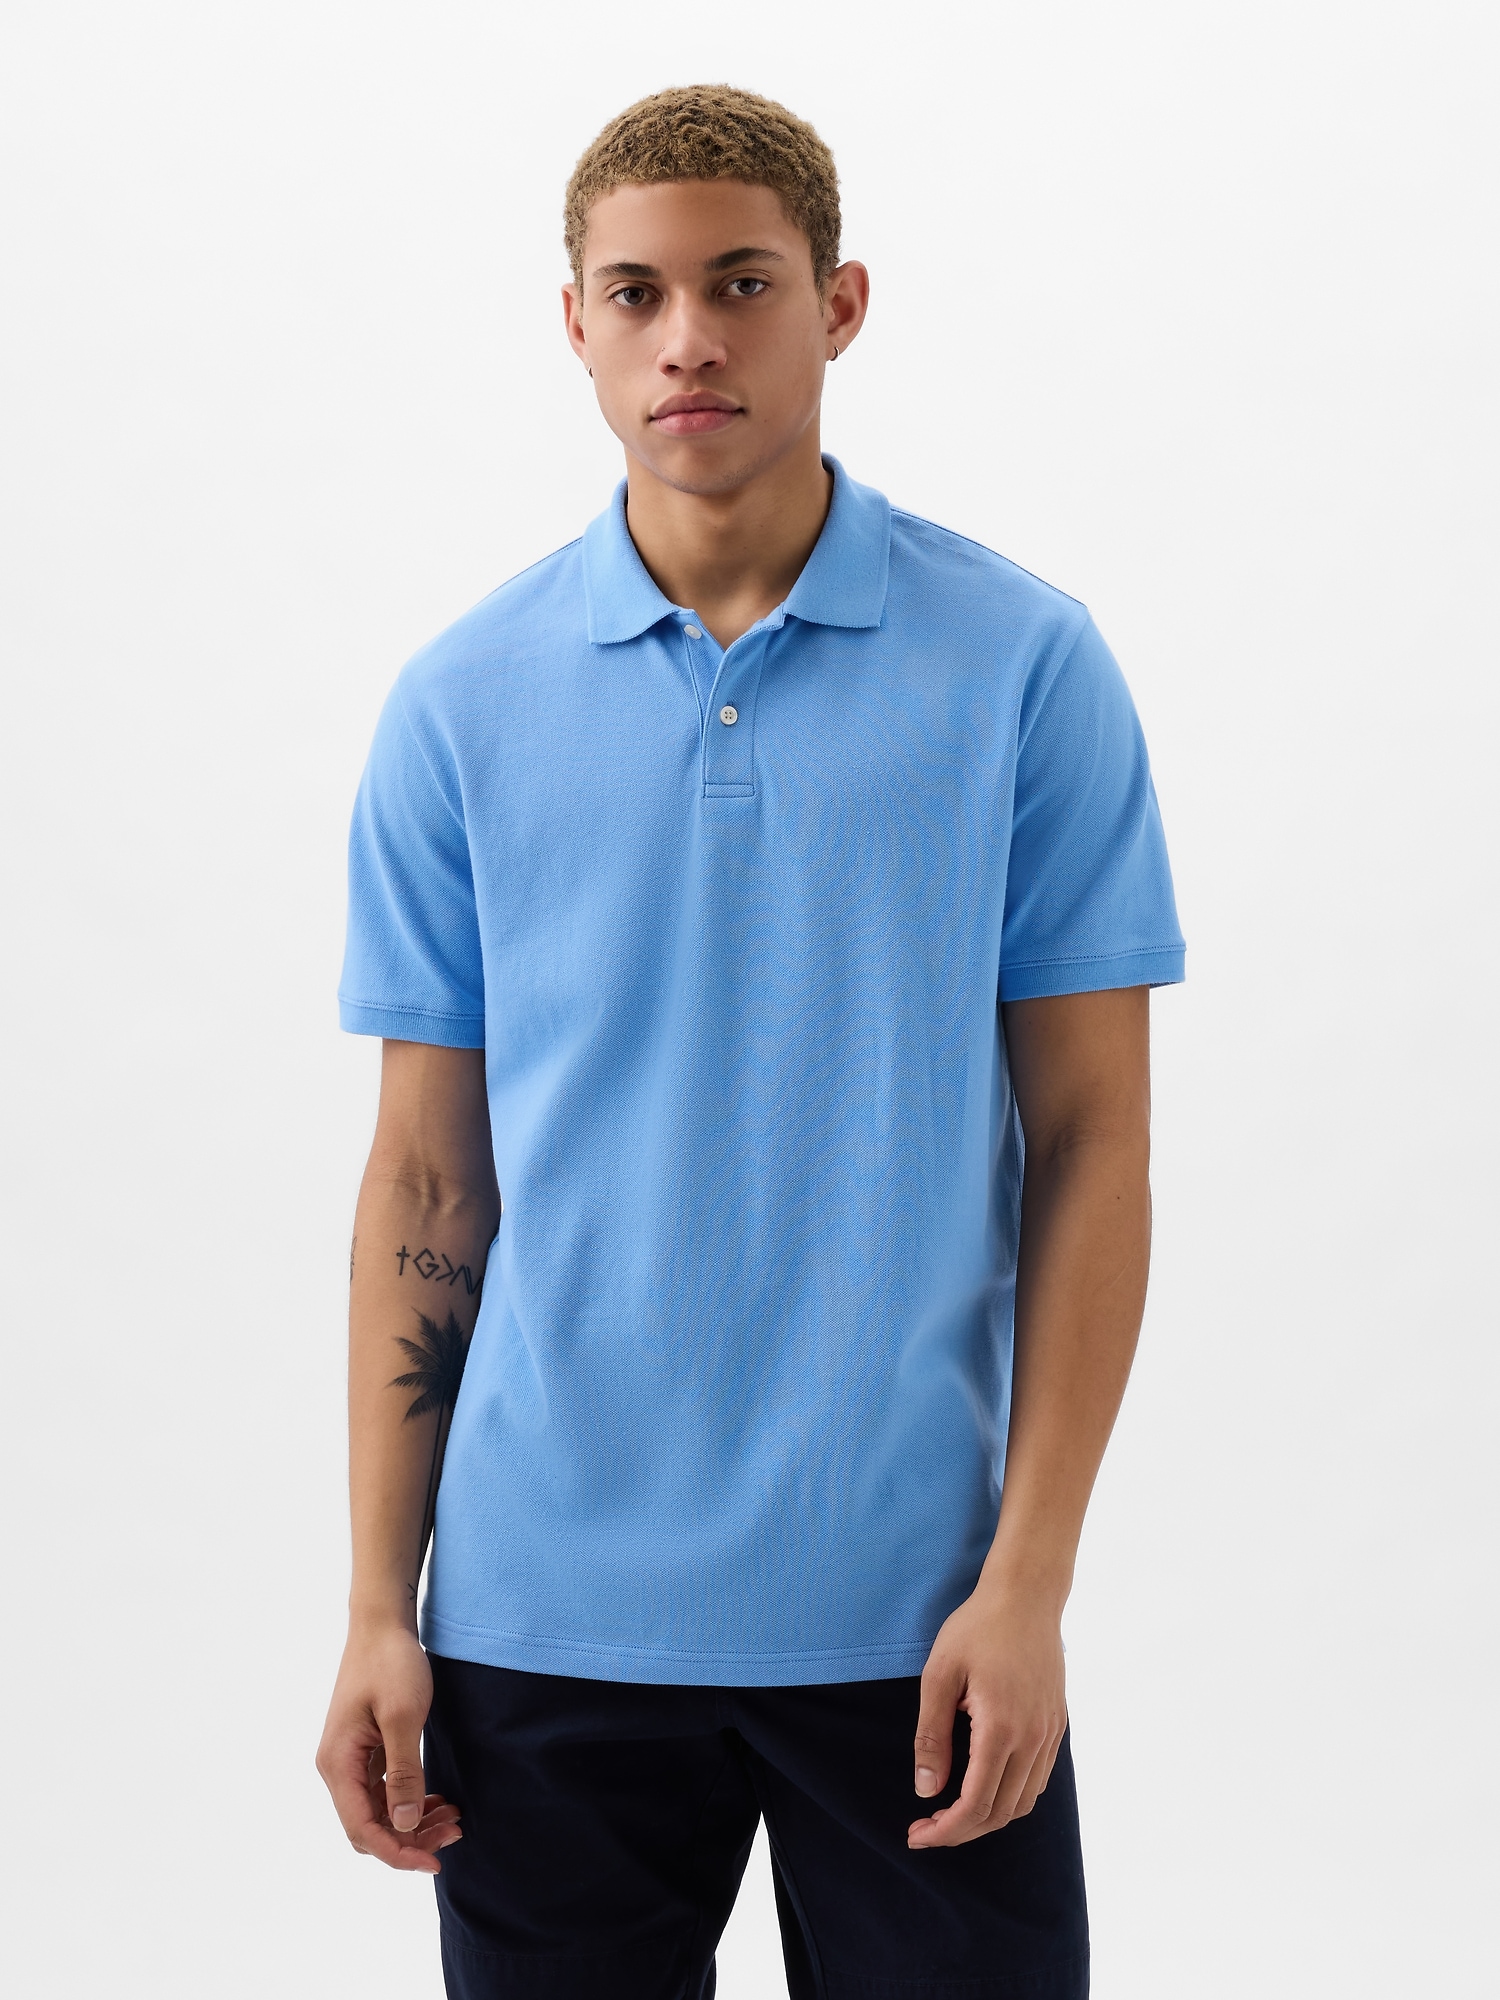 Gap Pique Polo Shirt Shirt In Union Blue